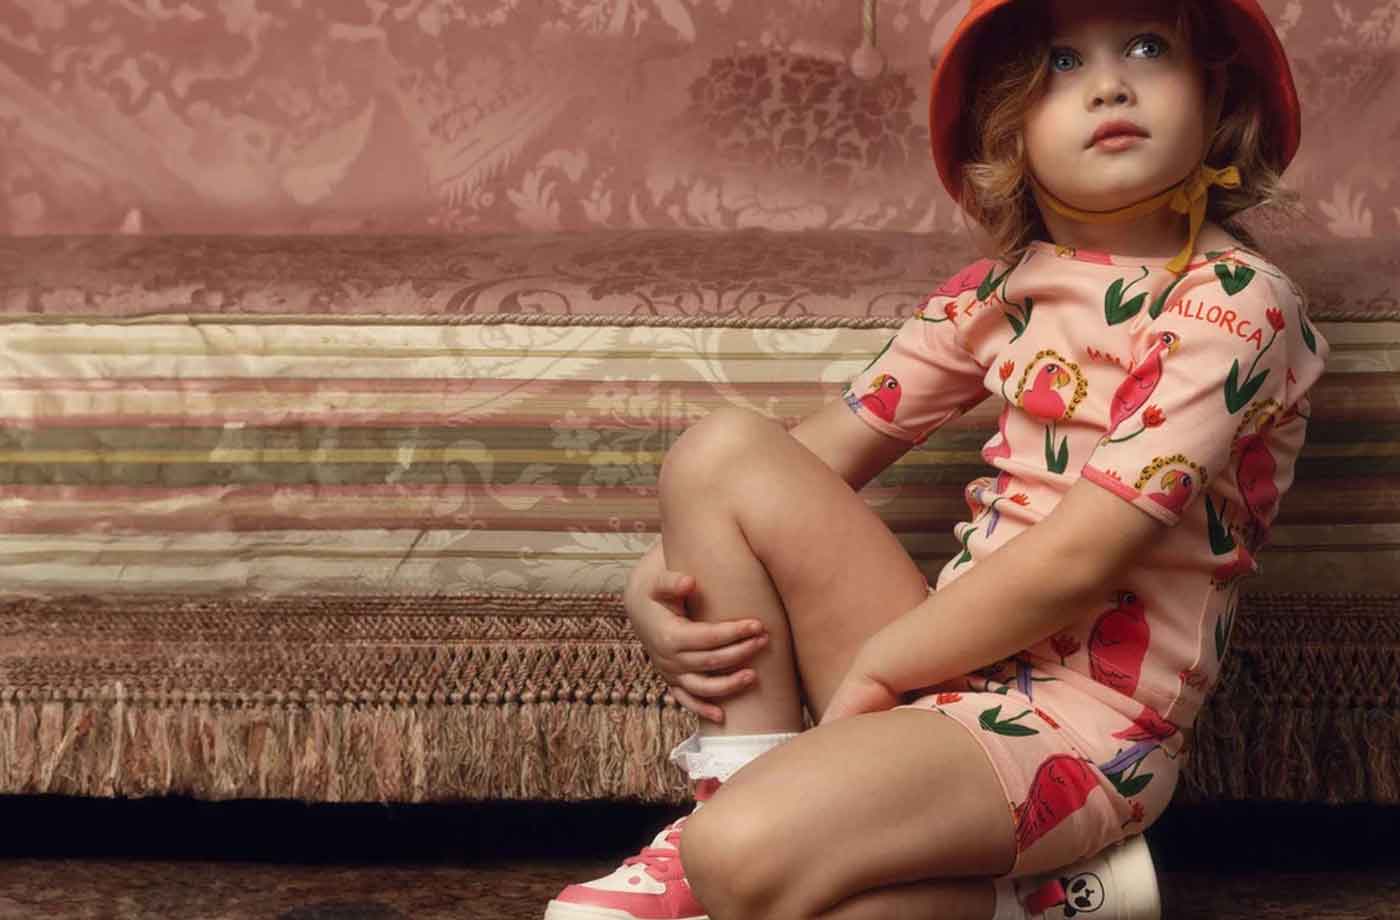 MINI RODINI - Sustainable Kids Fashion